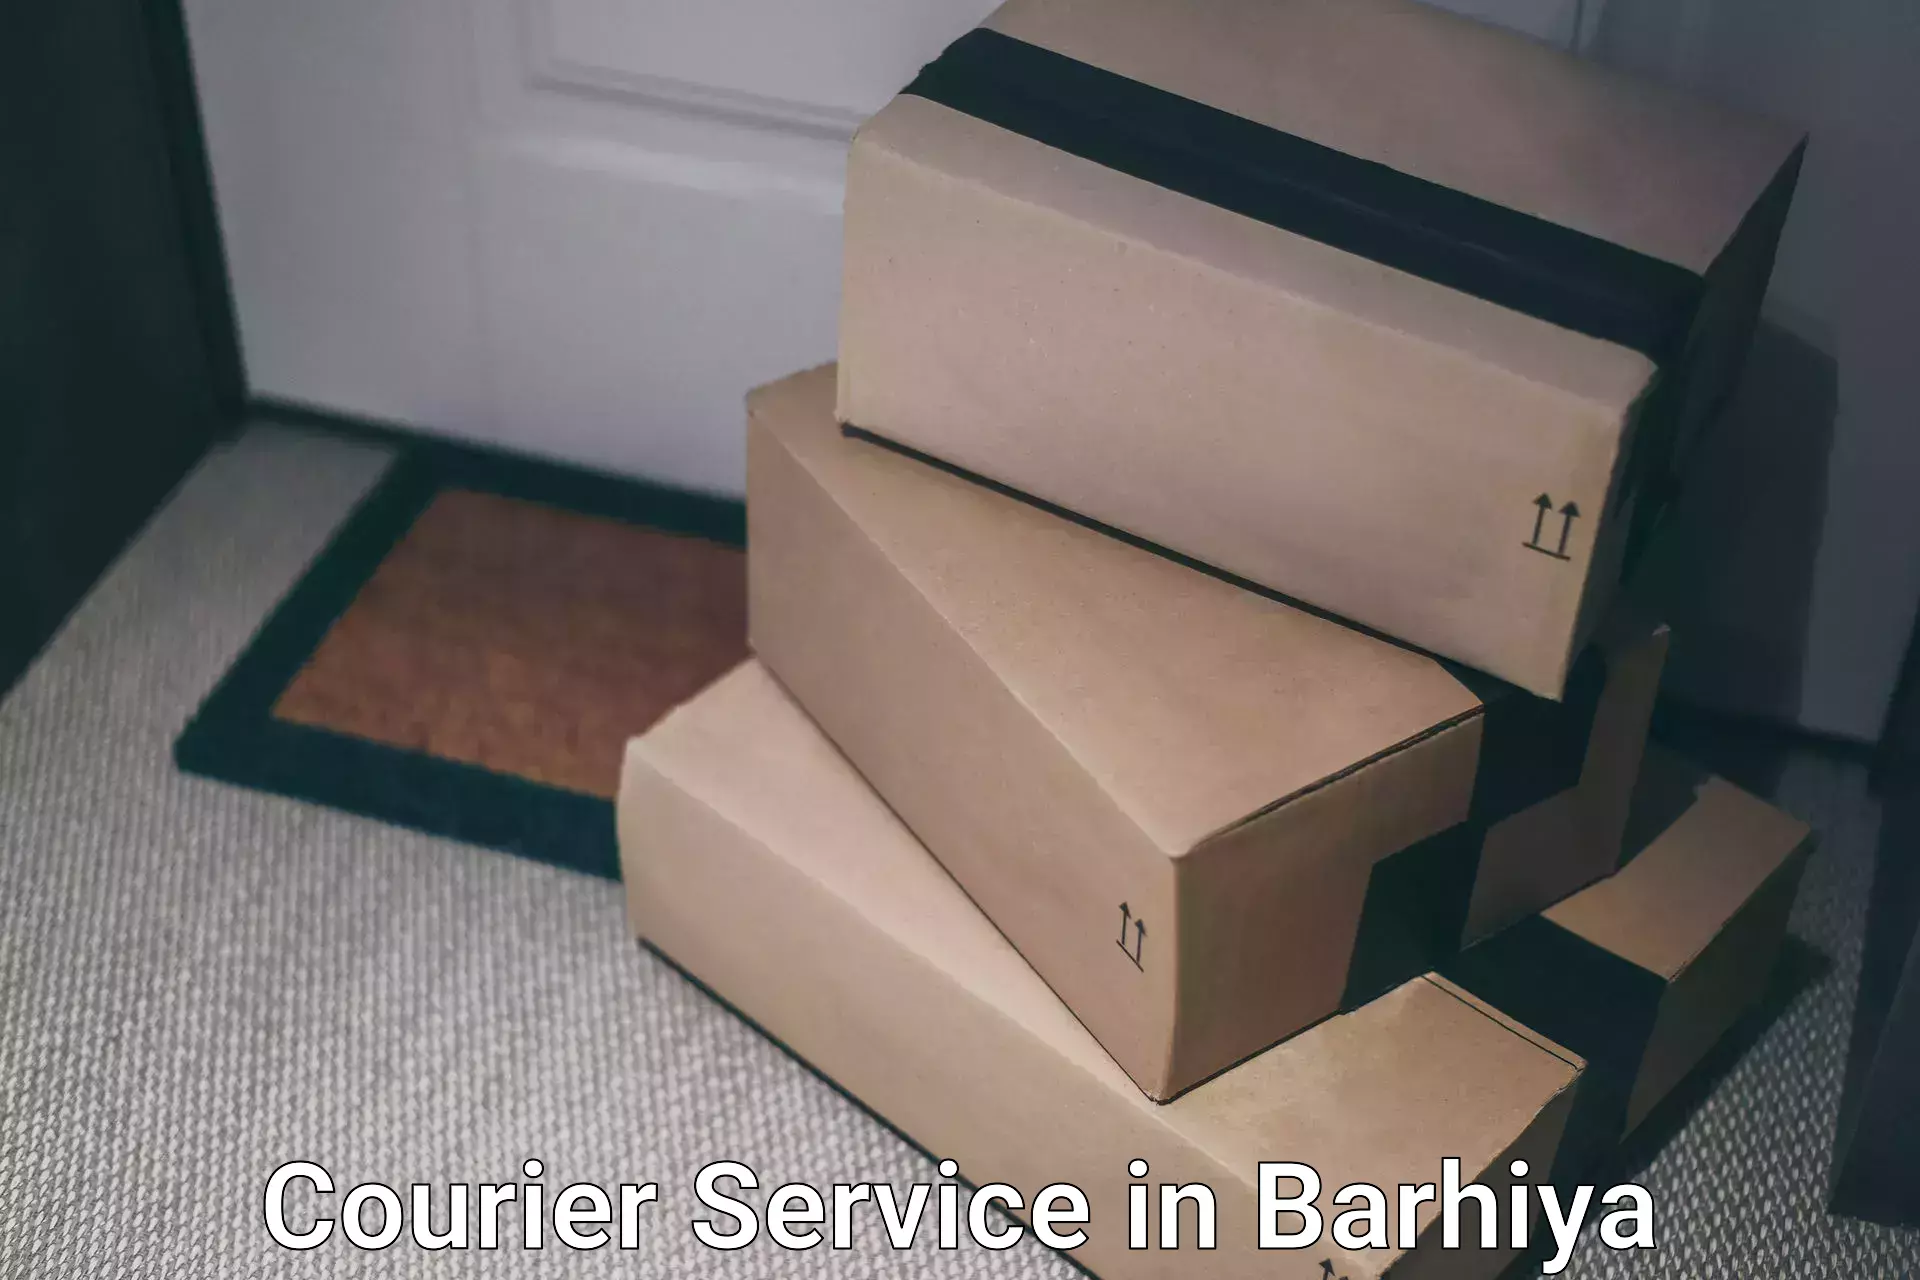 Express shipping in Barhiya